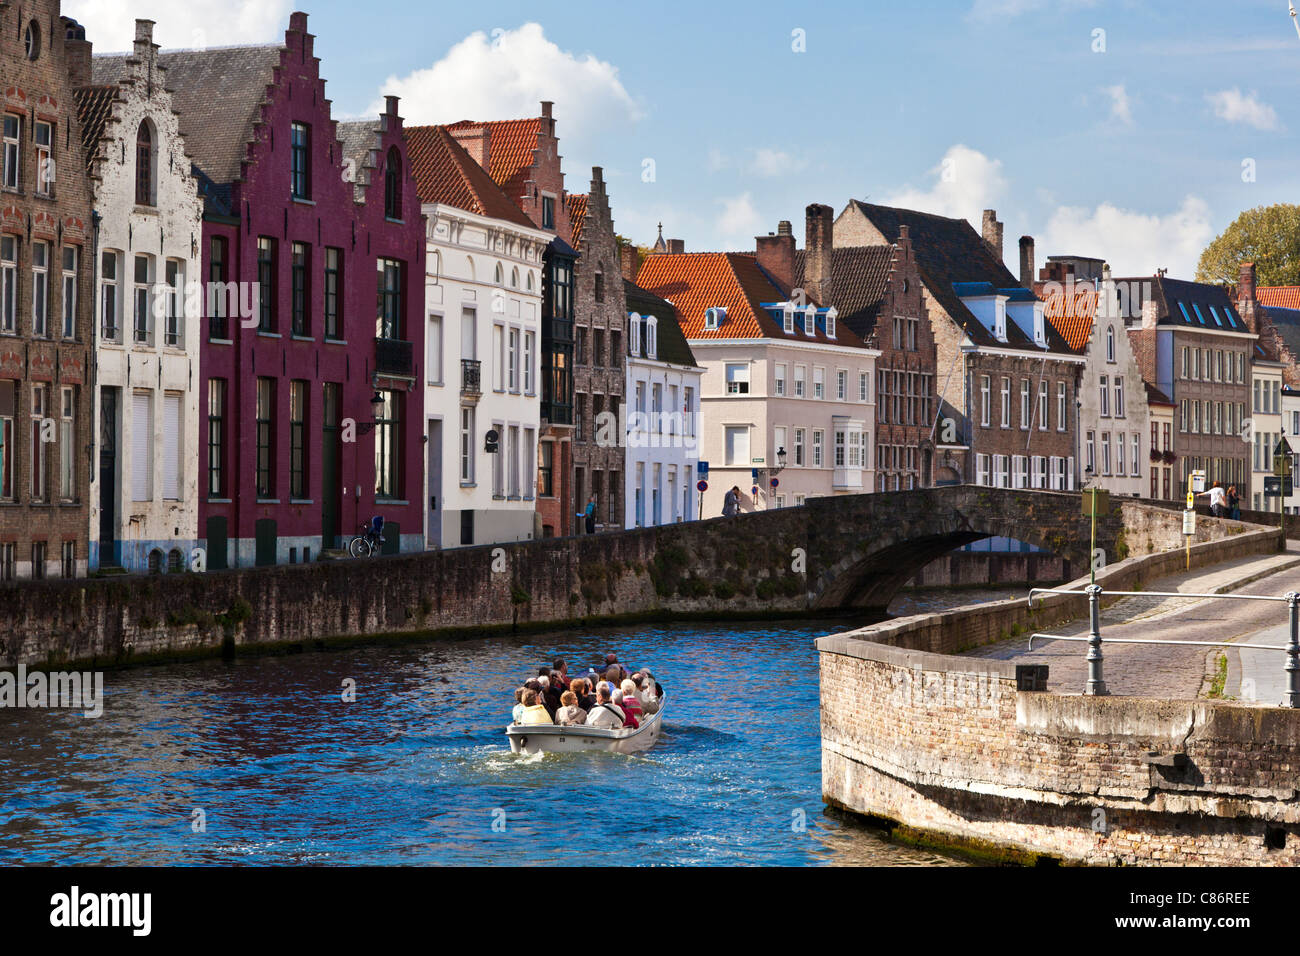 Touristenboot auf dem Kanal entlang der Spinolarei und Spiegelrei in Bruges,(Brugge), Belgien Stockfoto